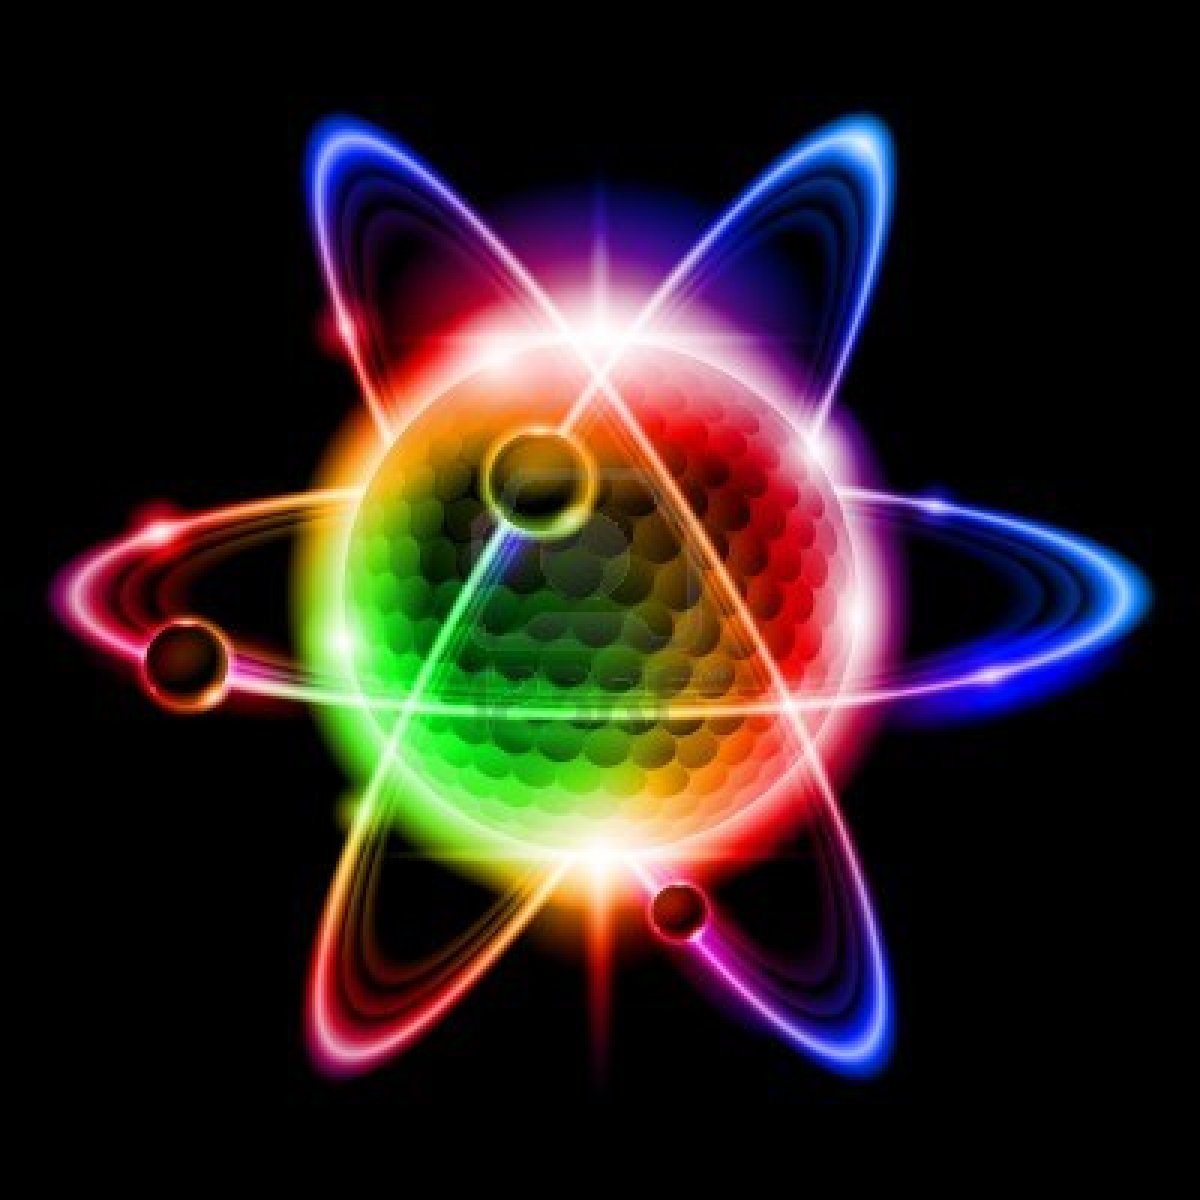 Imagine Emergence The Atom